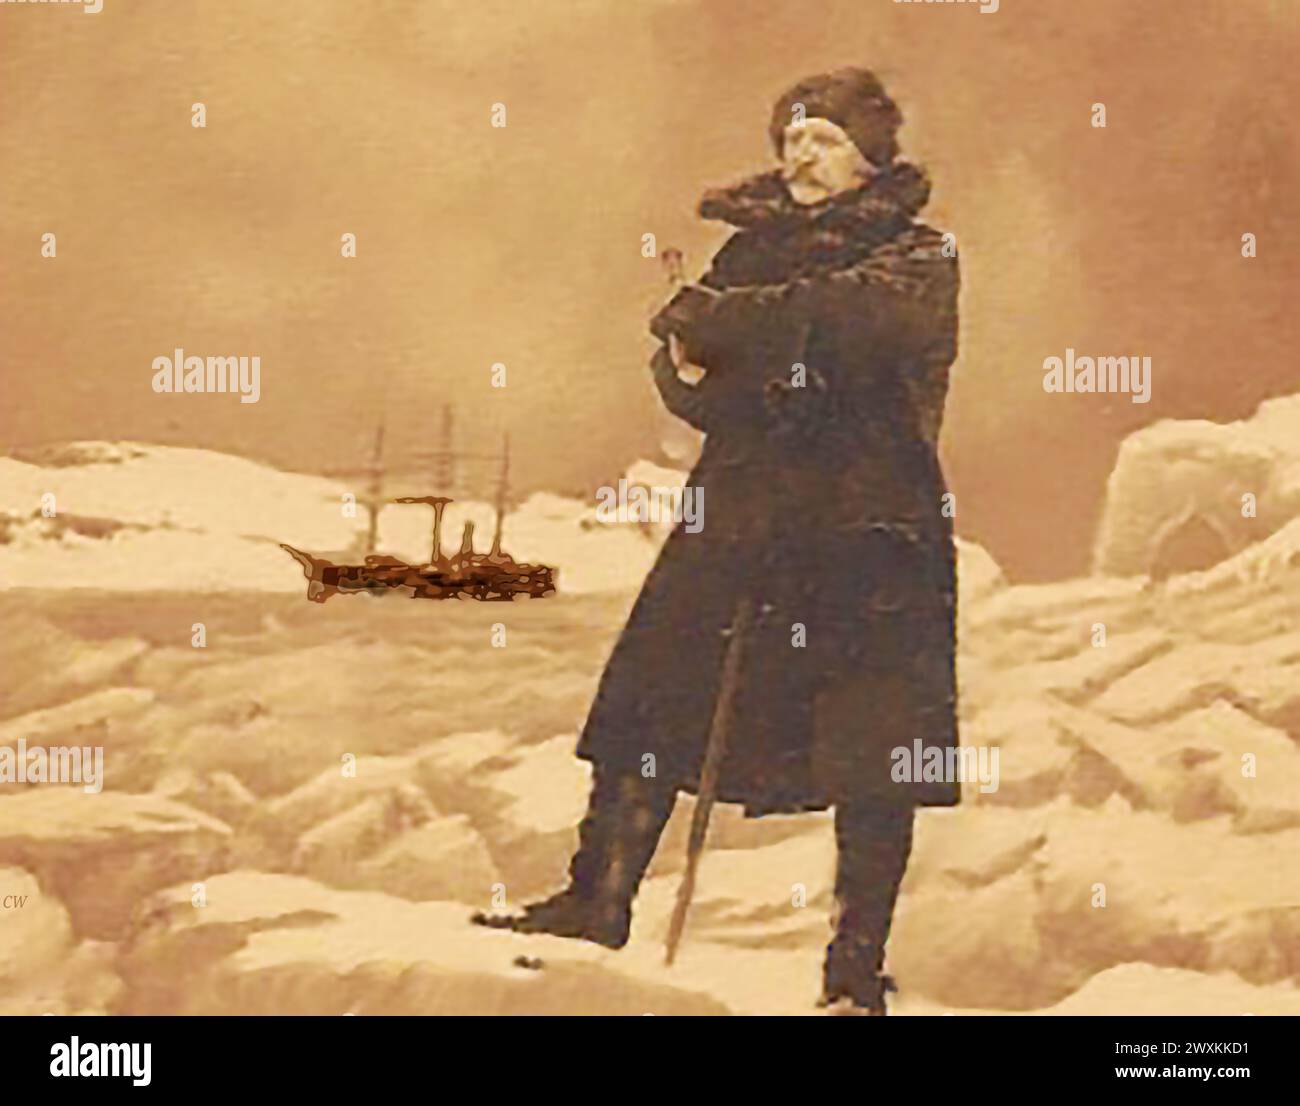 Porträt von Robert Peary Polar Explore. Robert Edwin Peary Sr. (/ 1856–1920) Er war ein US-amerikanischer Entdecker und Offizier der US-Marine, berühmt für mehrere Expeditionen in die Arktis im späten 19. Und frühen 20. Jahrhundert. Er behauptete, als erster den geografischen Nordpol erreicht zu haben. Er war 1896, Peary, Master Mason, und erhielt seinen Abschluss in der Nr. 454, New York City Kane Lodge. Das Roosevelt im Hintergrund wurde speziell für seine Polarforschungsexpeditionen entworfen und gebaut. i Stockfoto